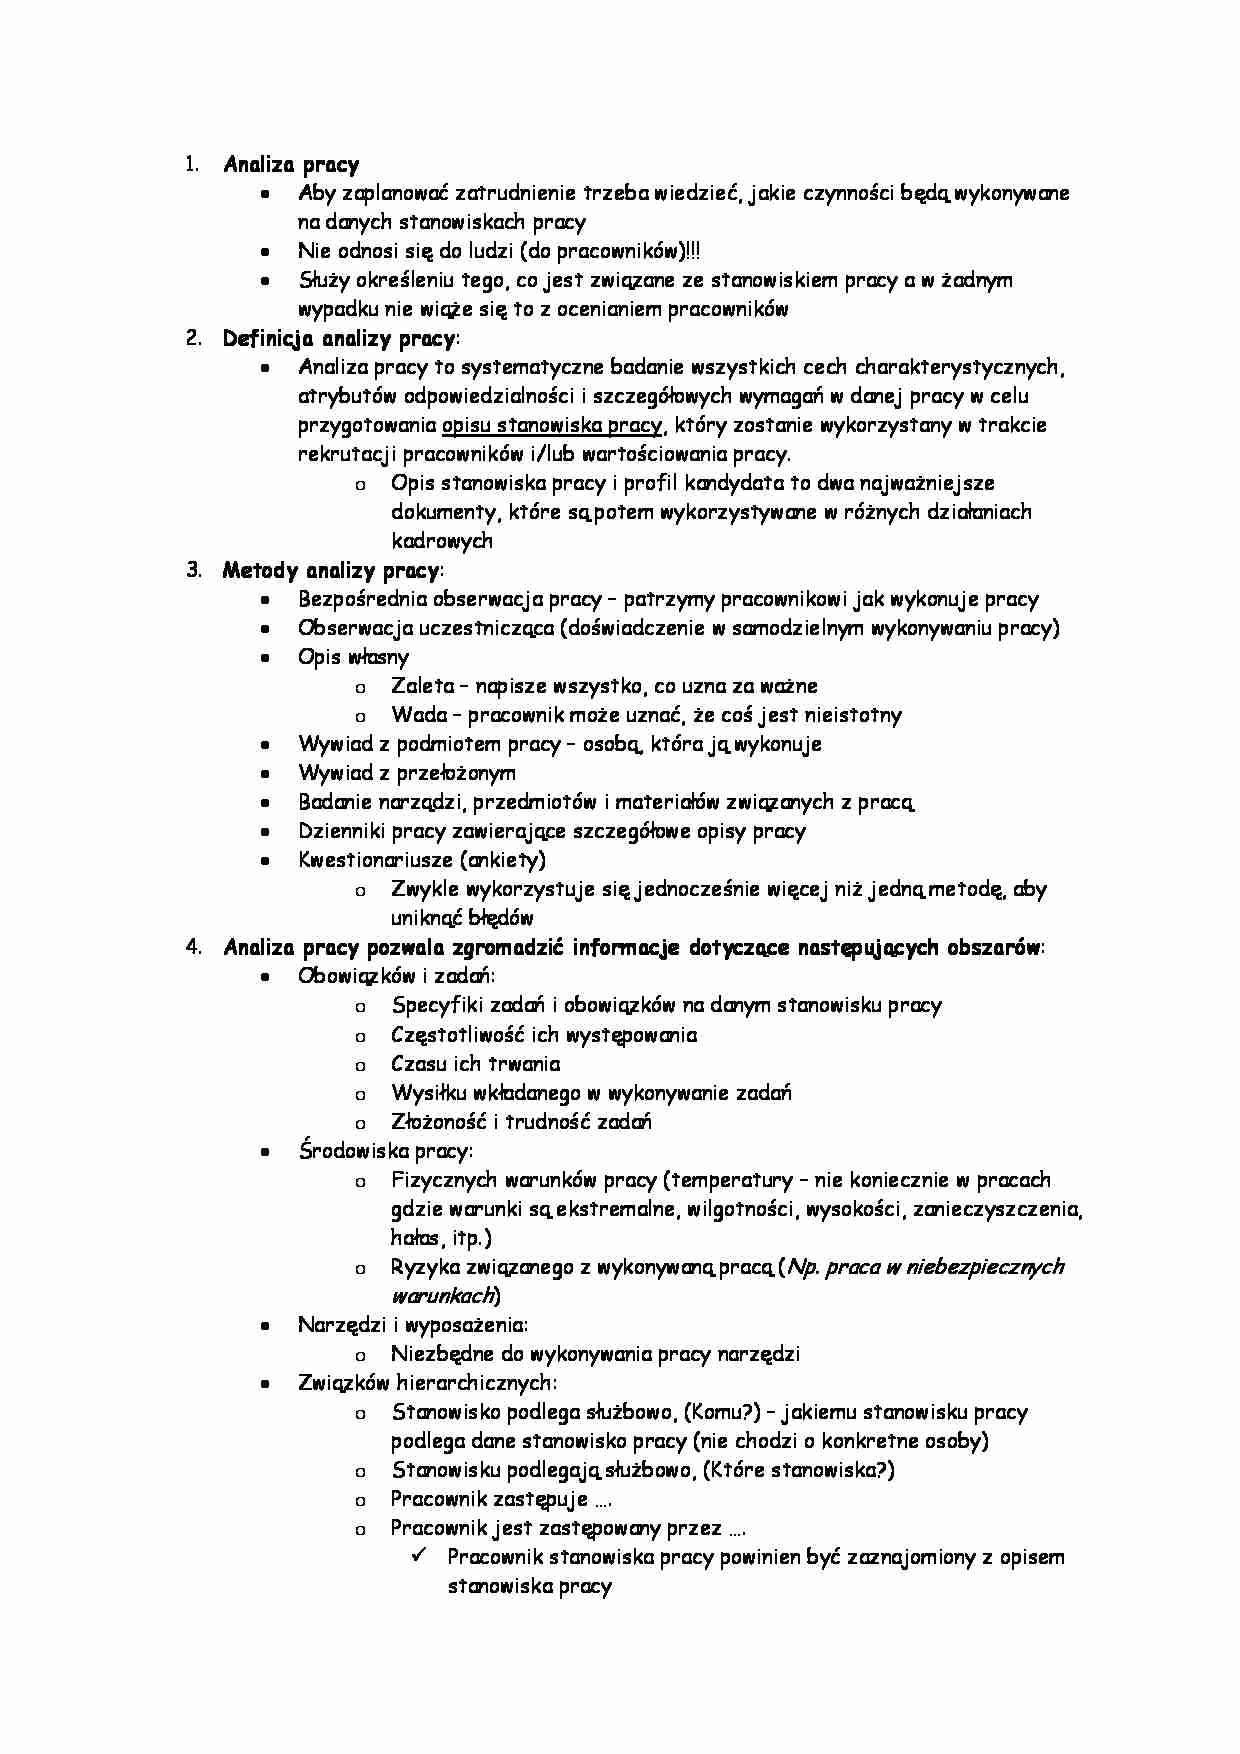 Zarządzanie zasobami ludzkimi - Analiza pracy - strona 1